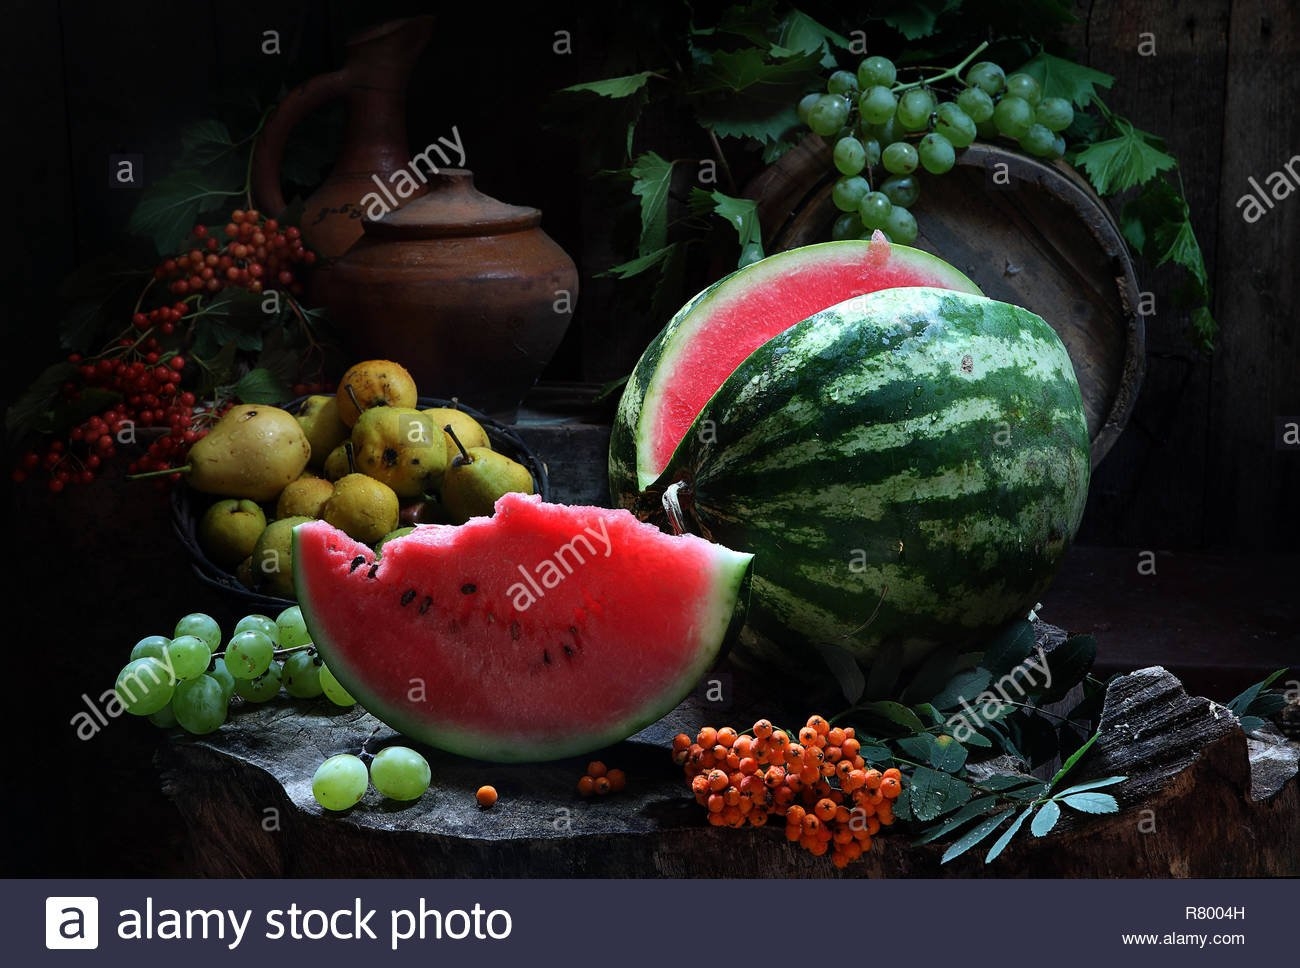 фото фруктов августа